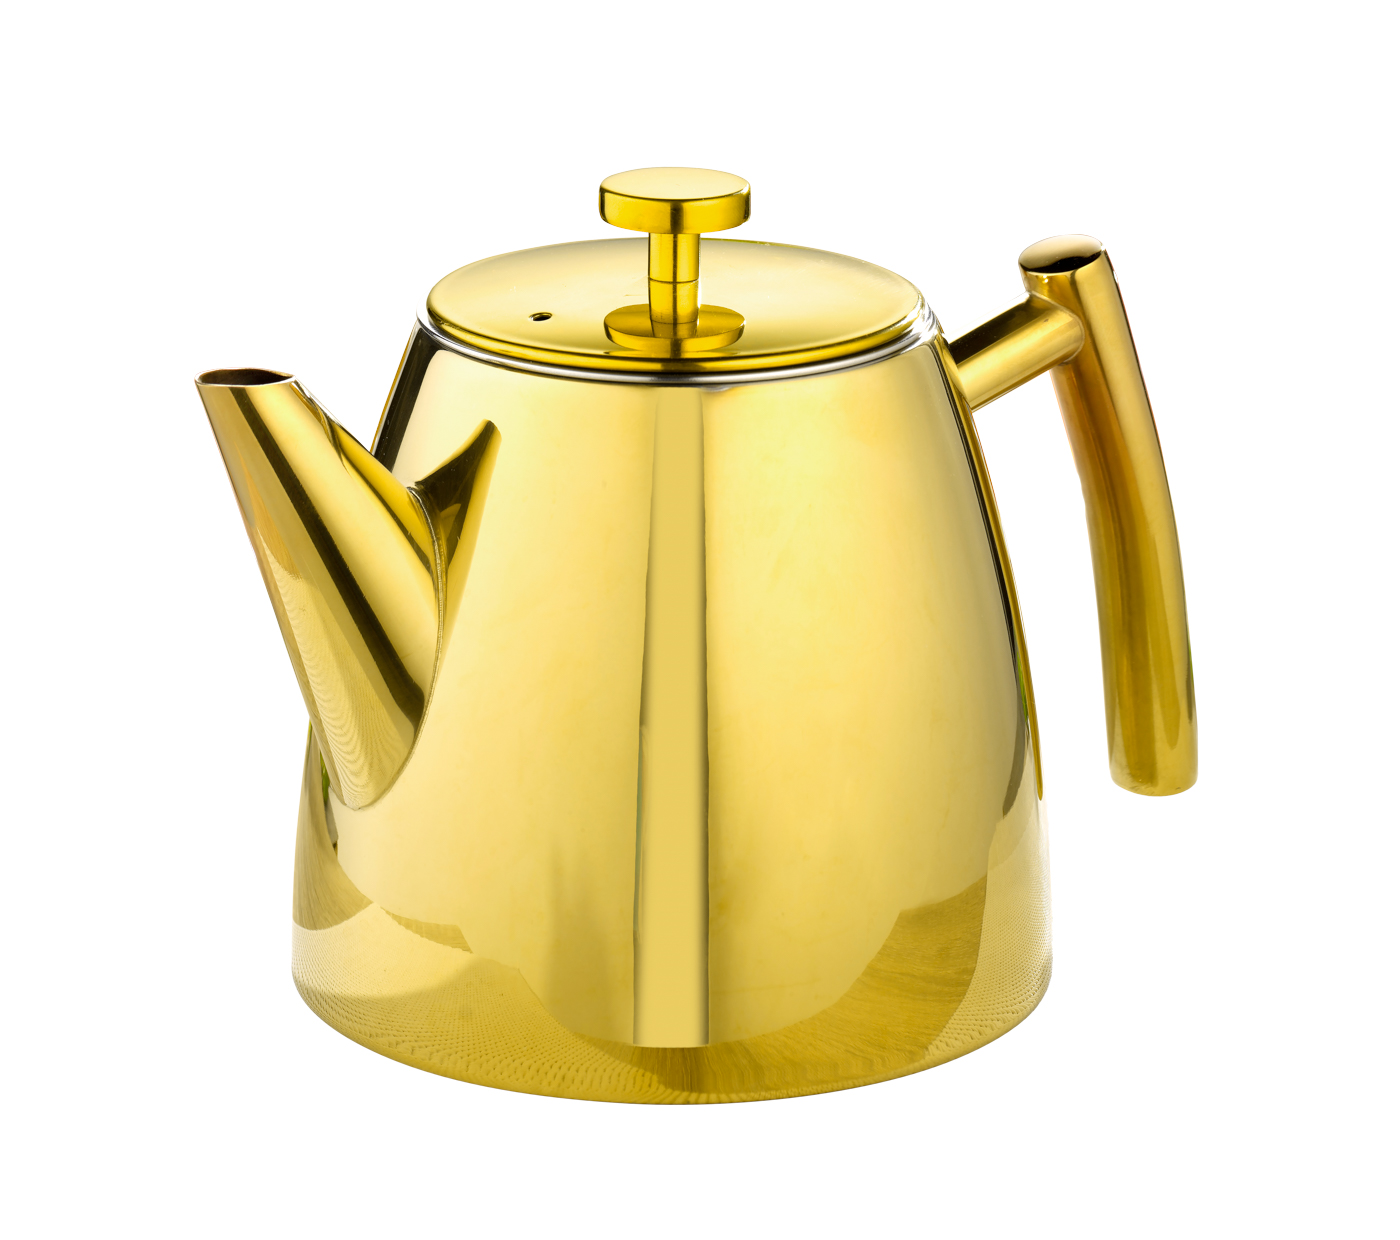 Teekanne BRIGHTON, Inhalt: 1,2 Liter, mit PVD-Beschichtung, Farbe: Gold. aus Edelstahl 18/10 poliert.